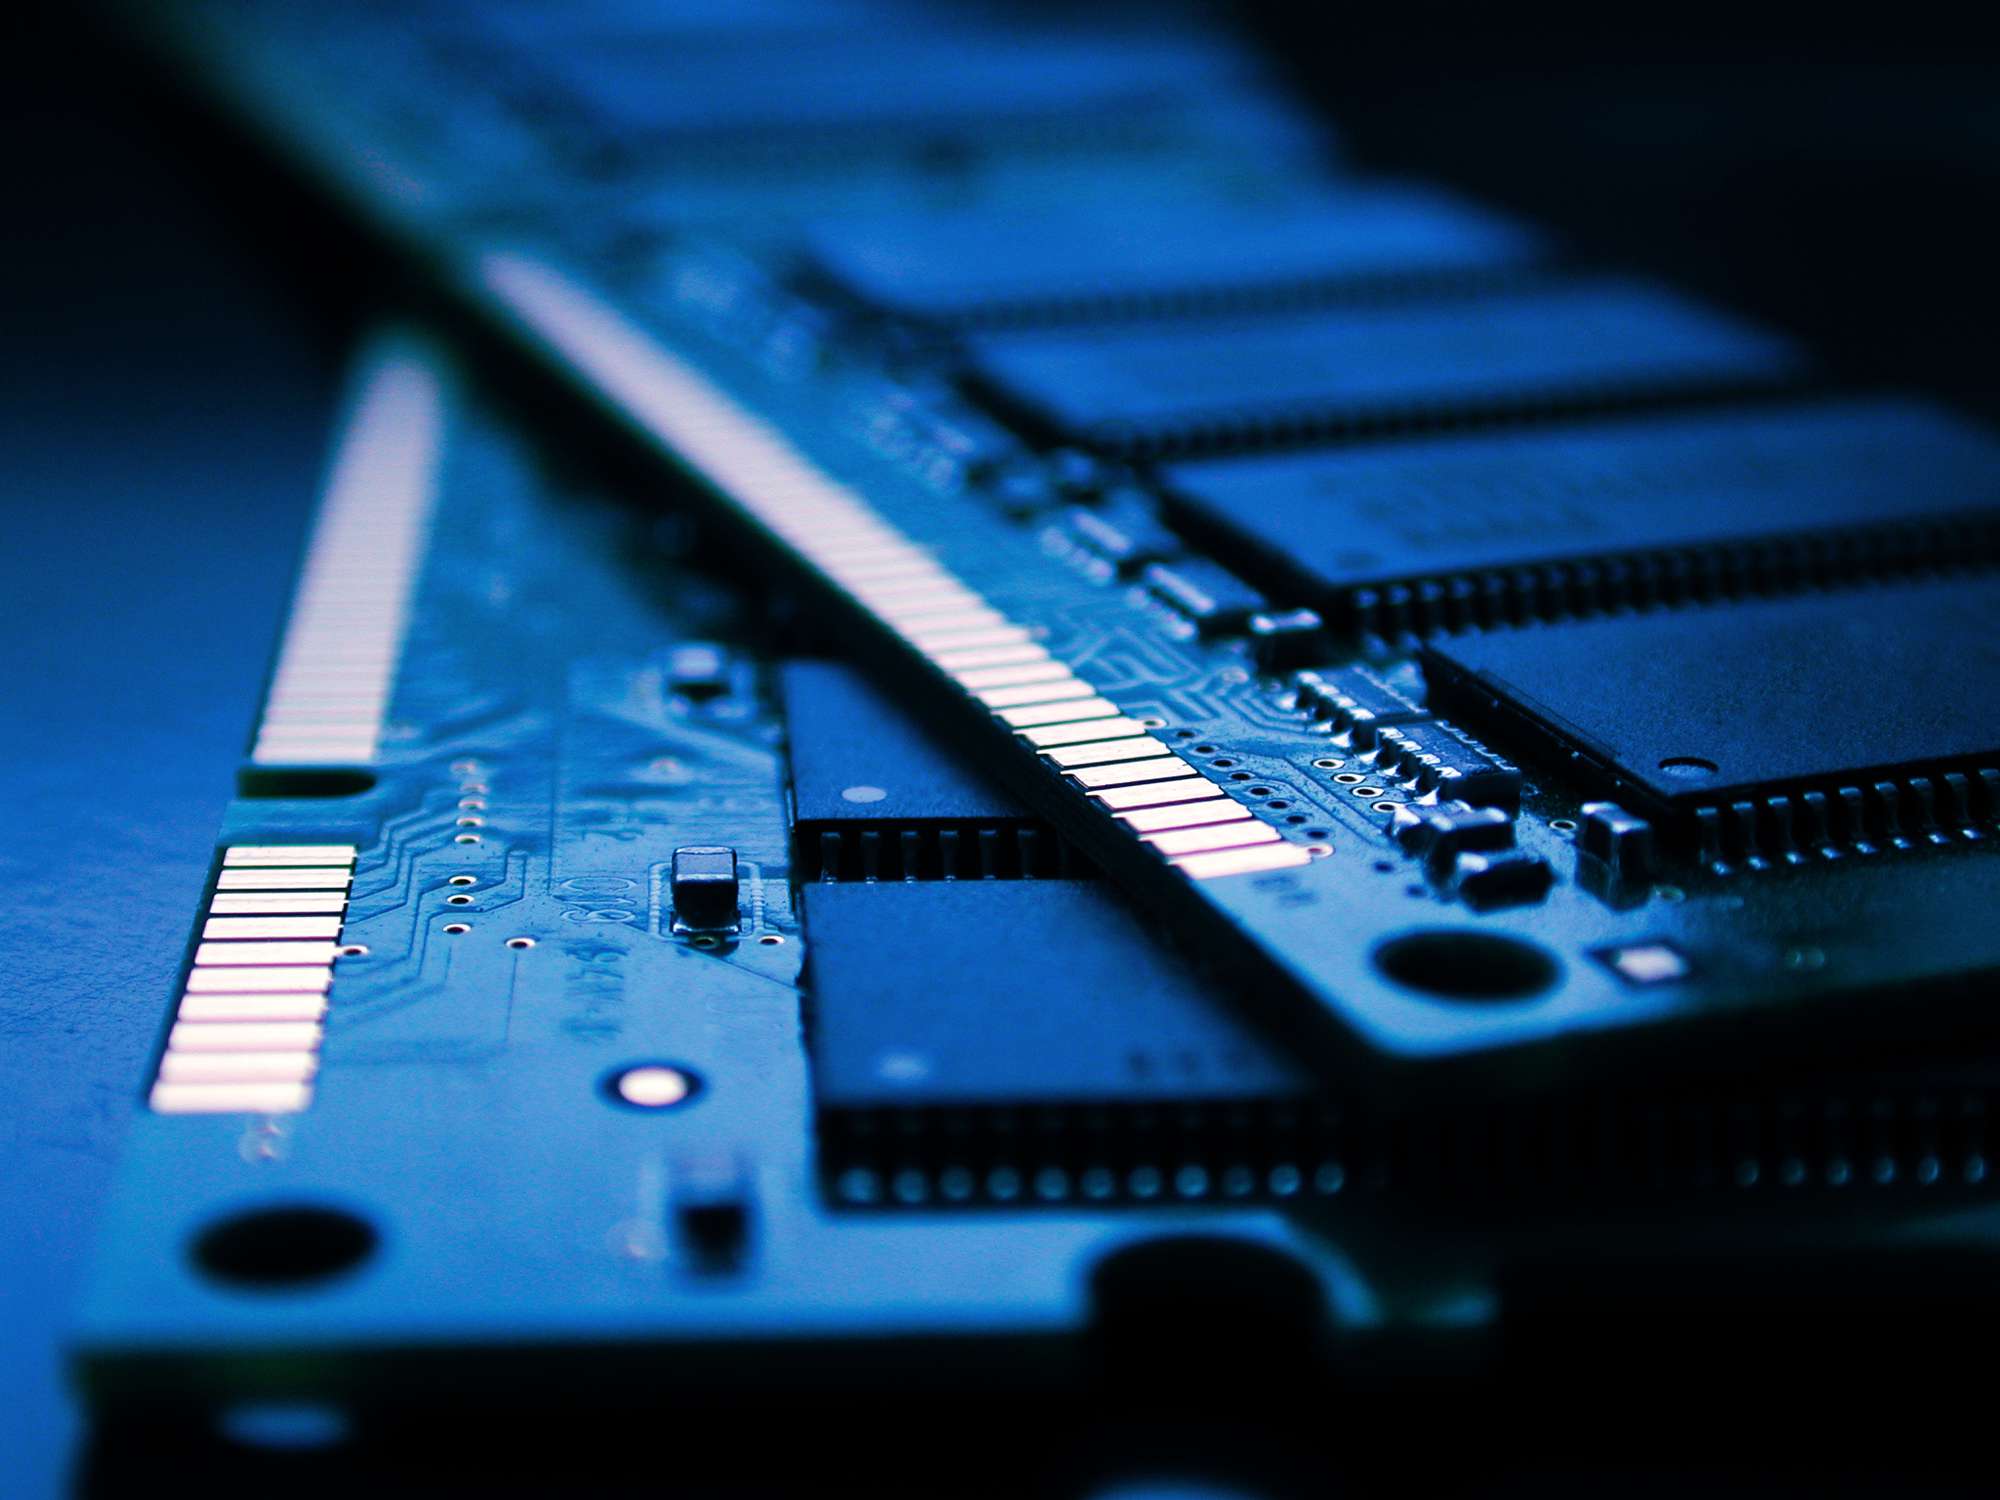 Lähikuva kahdesta tikusta tietokoneen RAM-muistista pehmeän sinisen valon alla